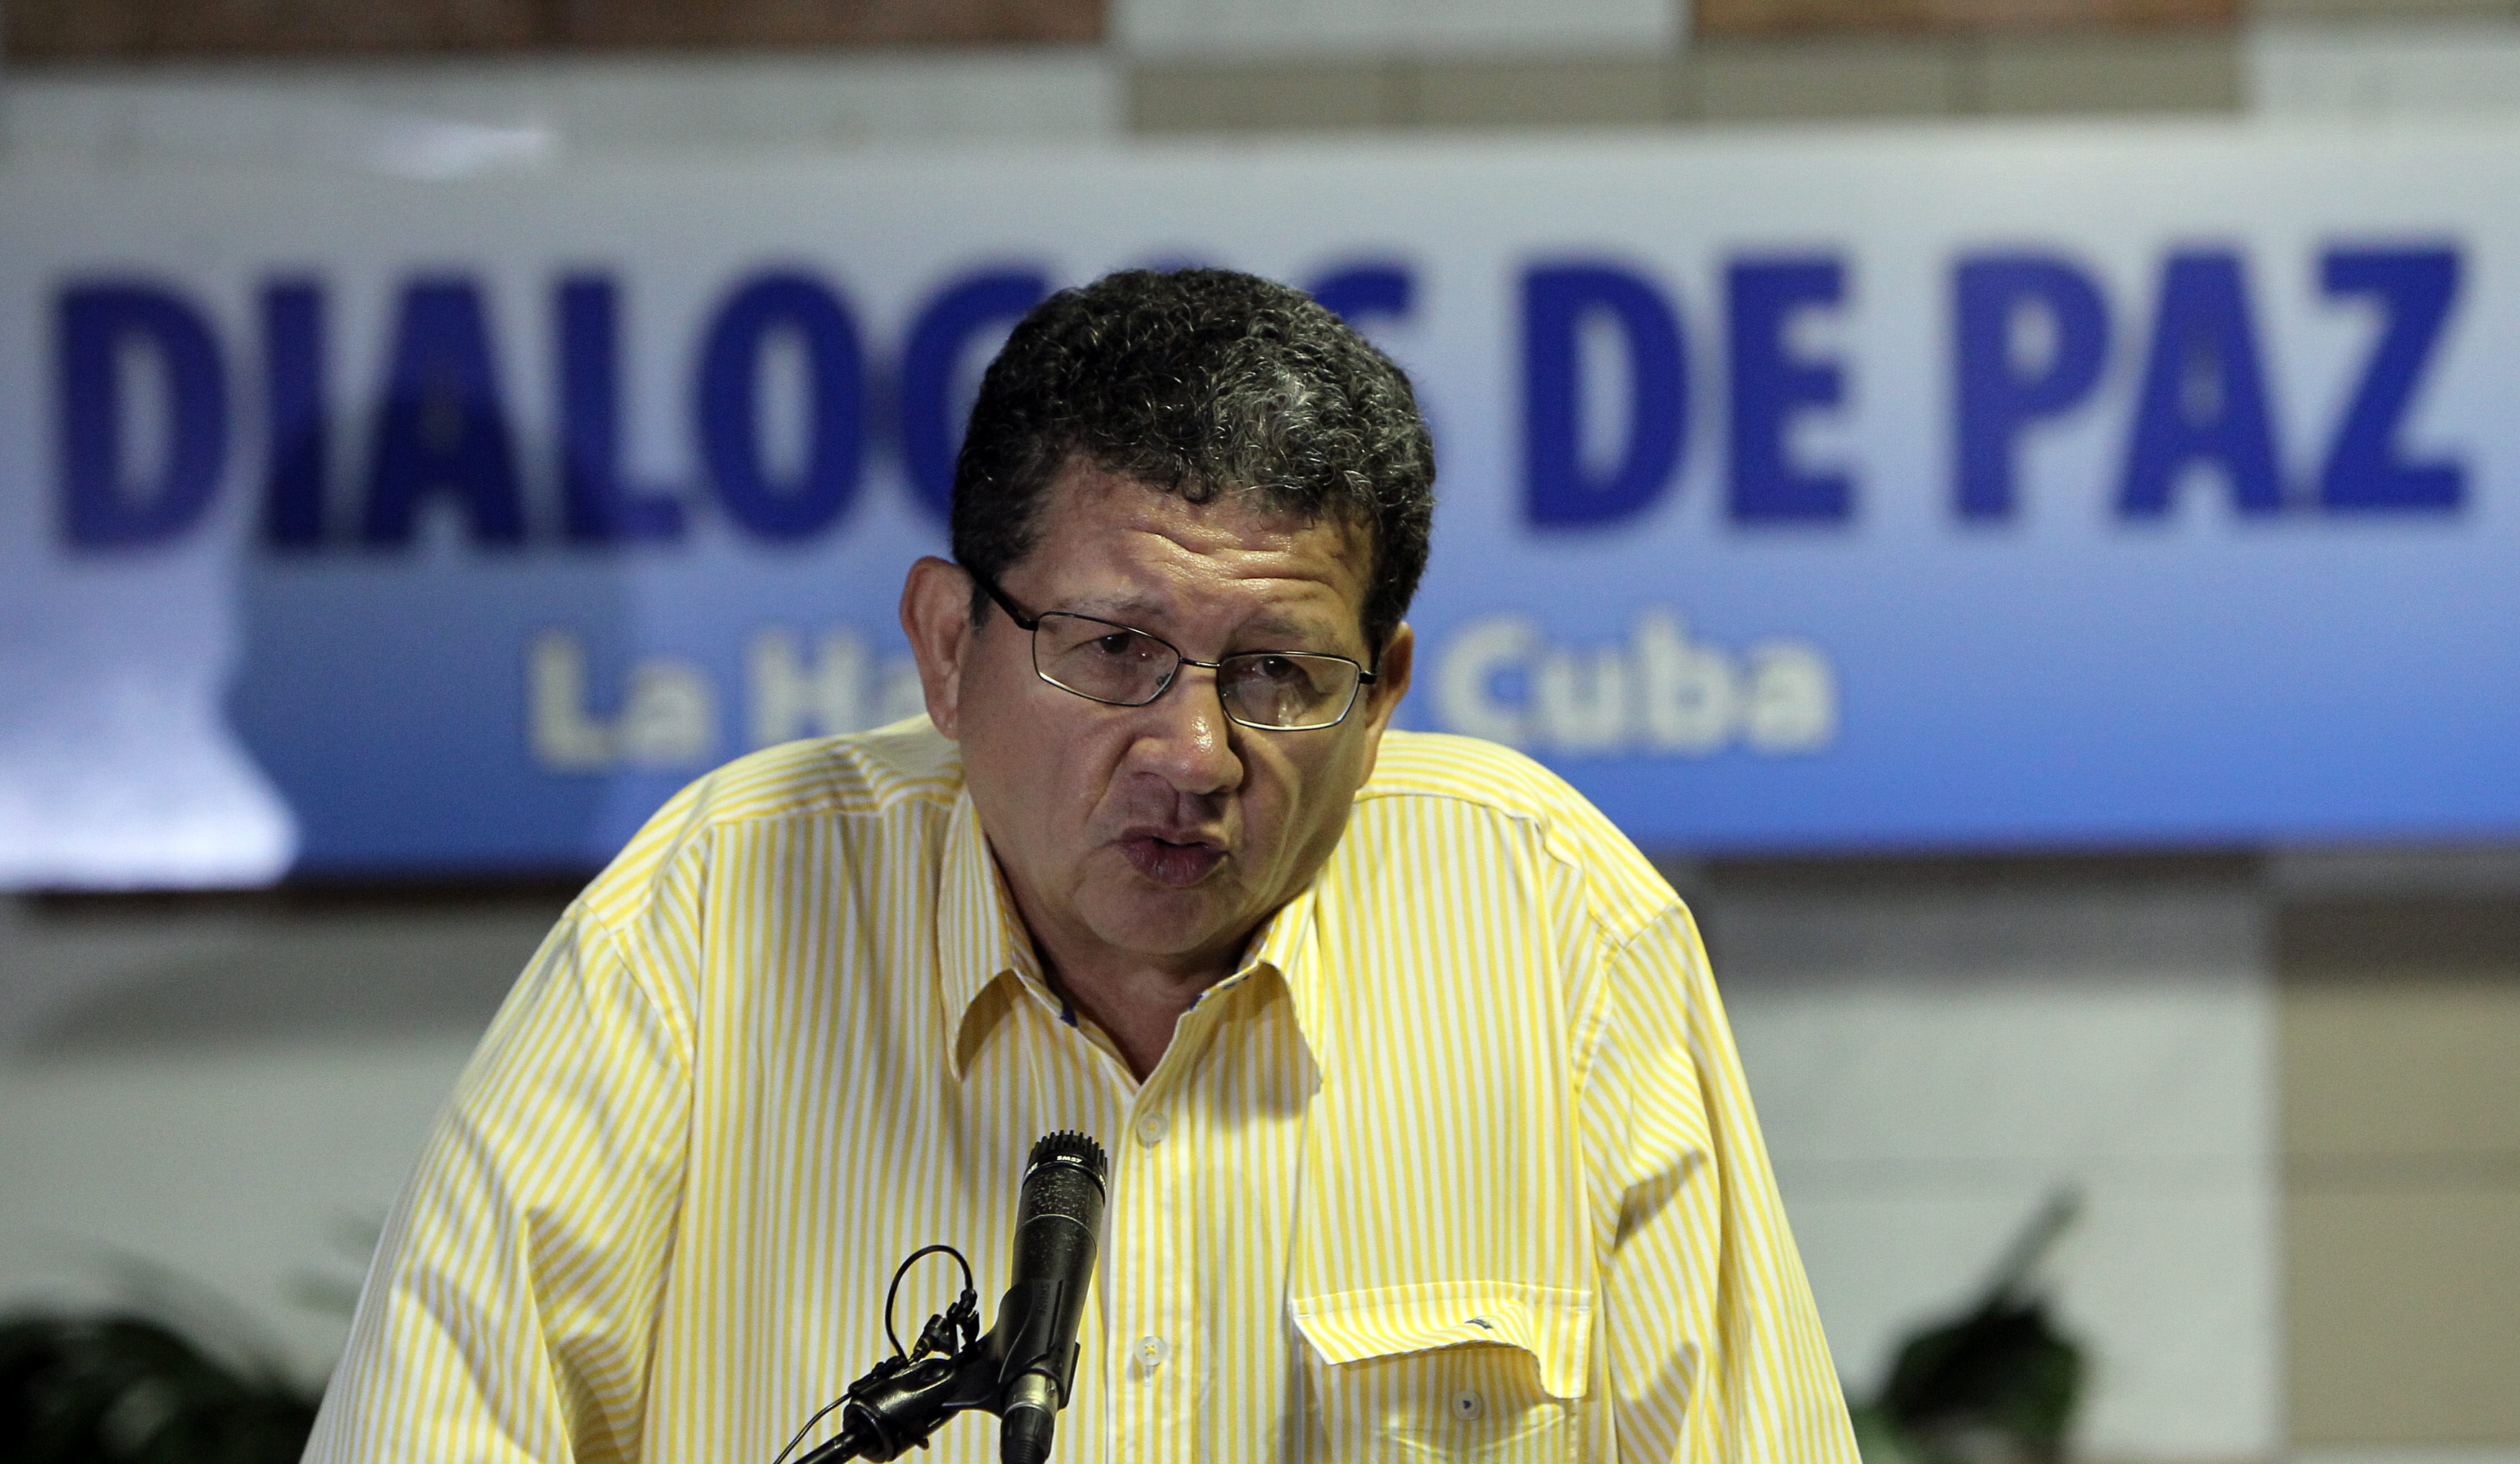 Uno de los jefes de las Fuerzas Armadas Revolucionarias de Colombia (FARC), Pablo Catatumbo, condenó hoy el asesinato sistemático de líderes campesinos